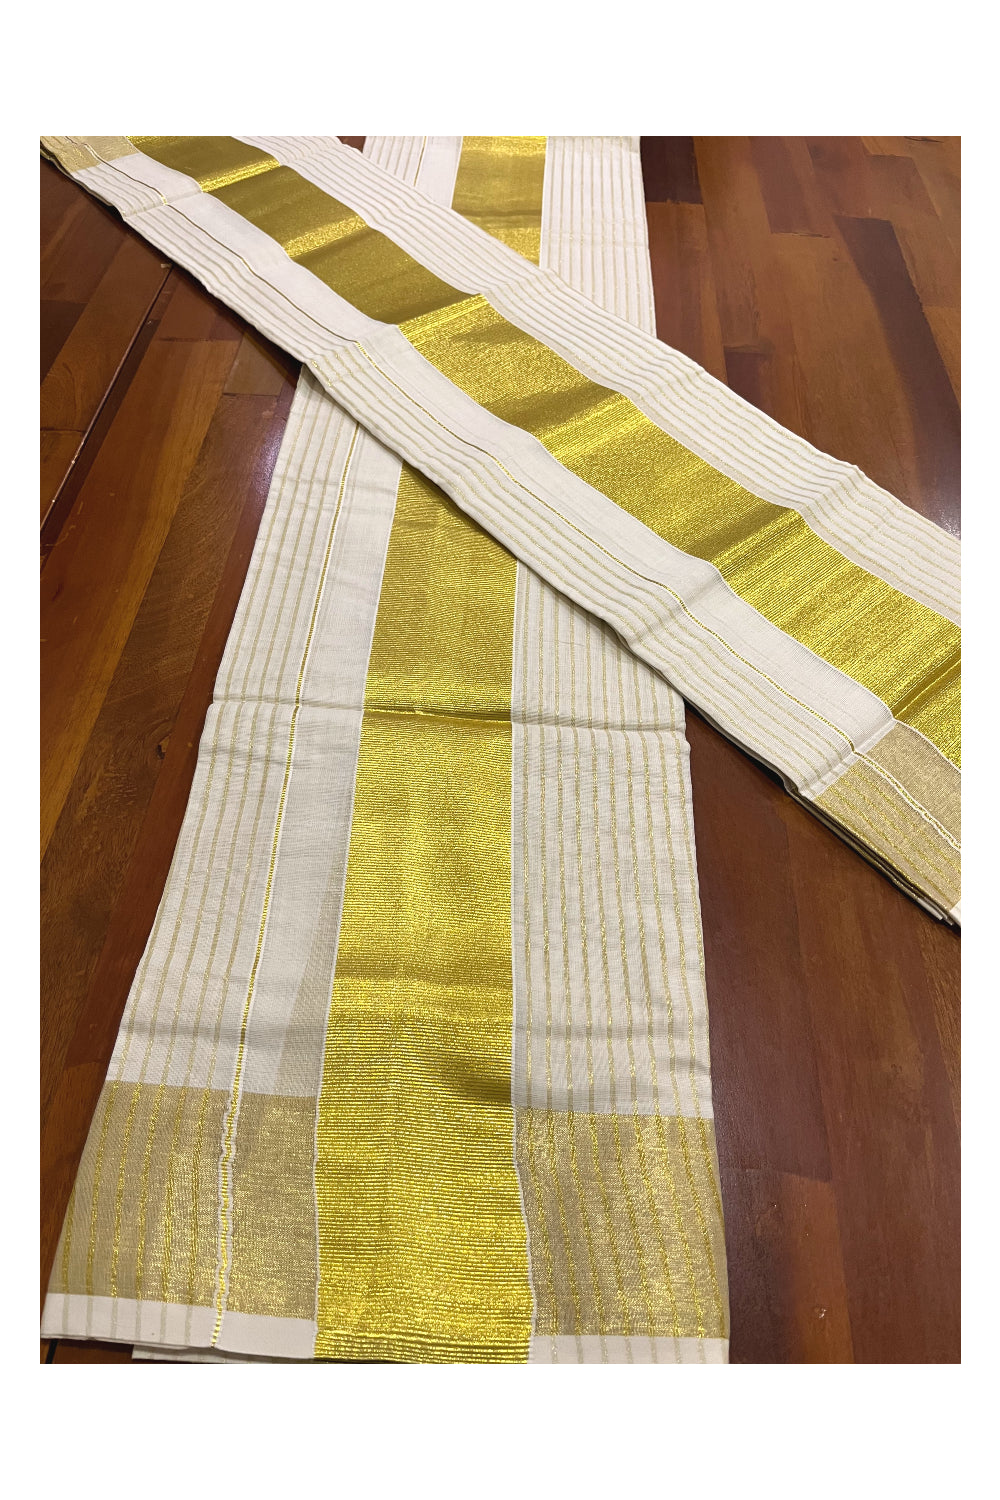 Pure Cotton Set Mundu (Mundum Neriyathum) with Kasavu Woven Lines Design on Body 2.80 Mtrs